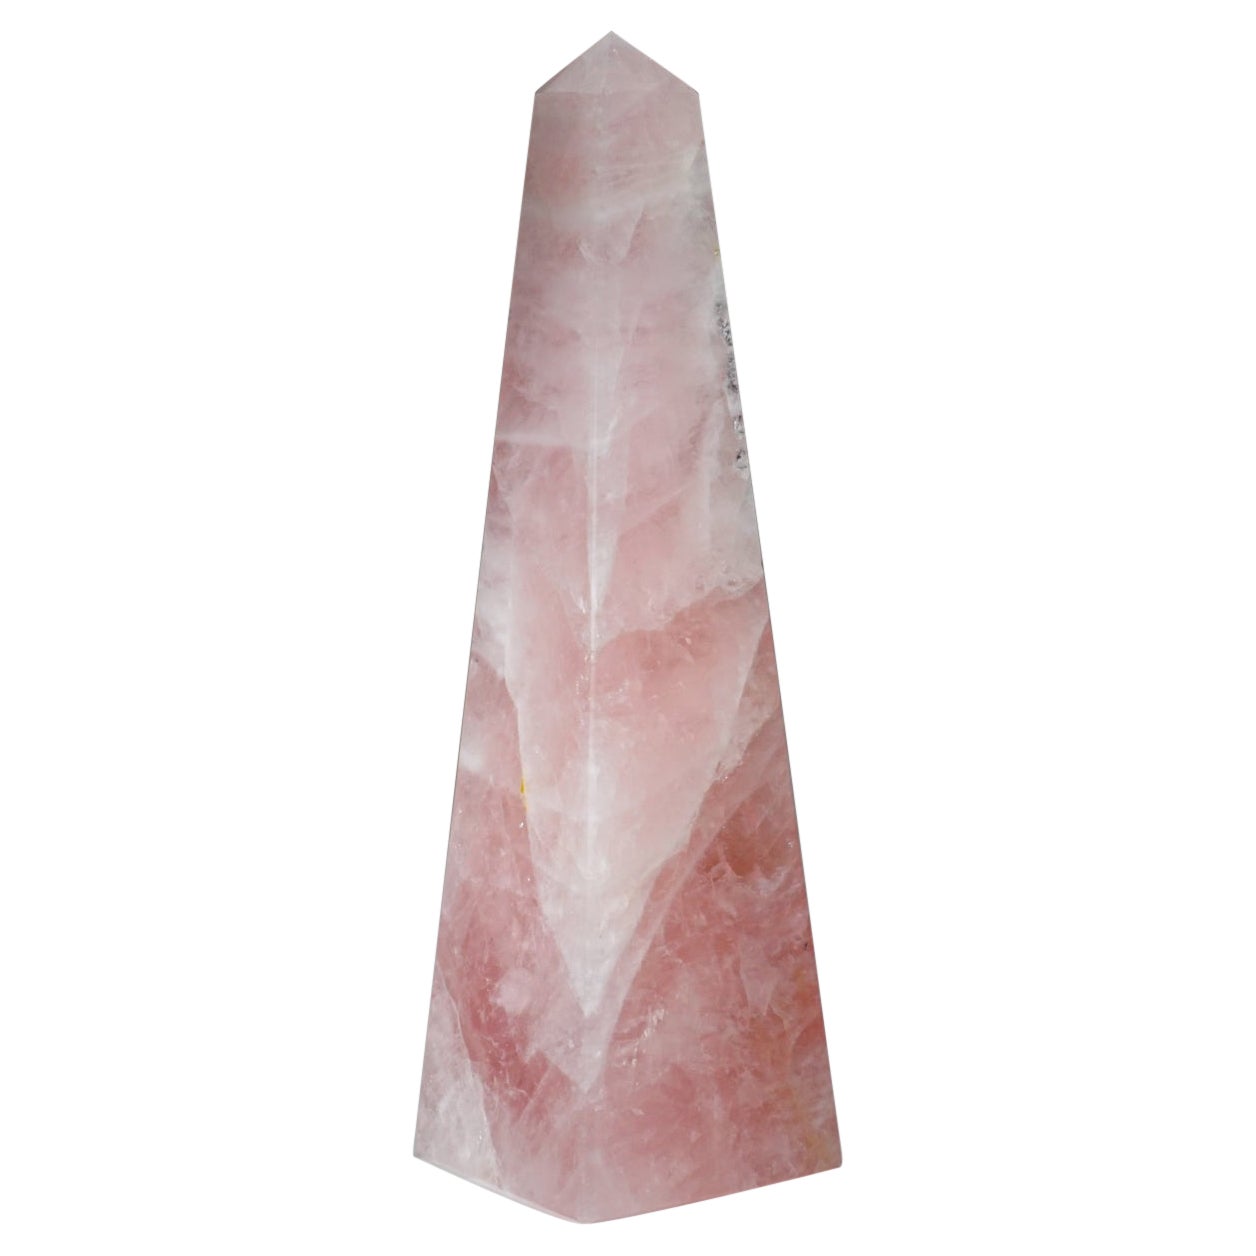 Polished Rose Quartz Obelisk from Brazil (3 lbs) For Sale